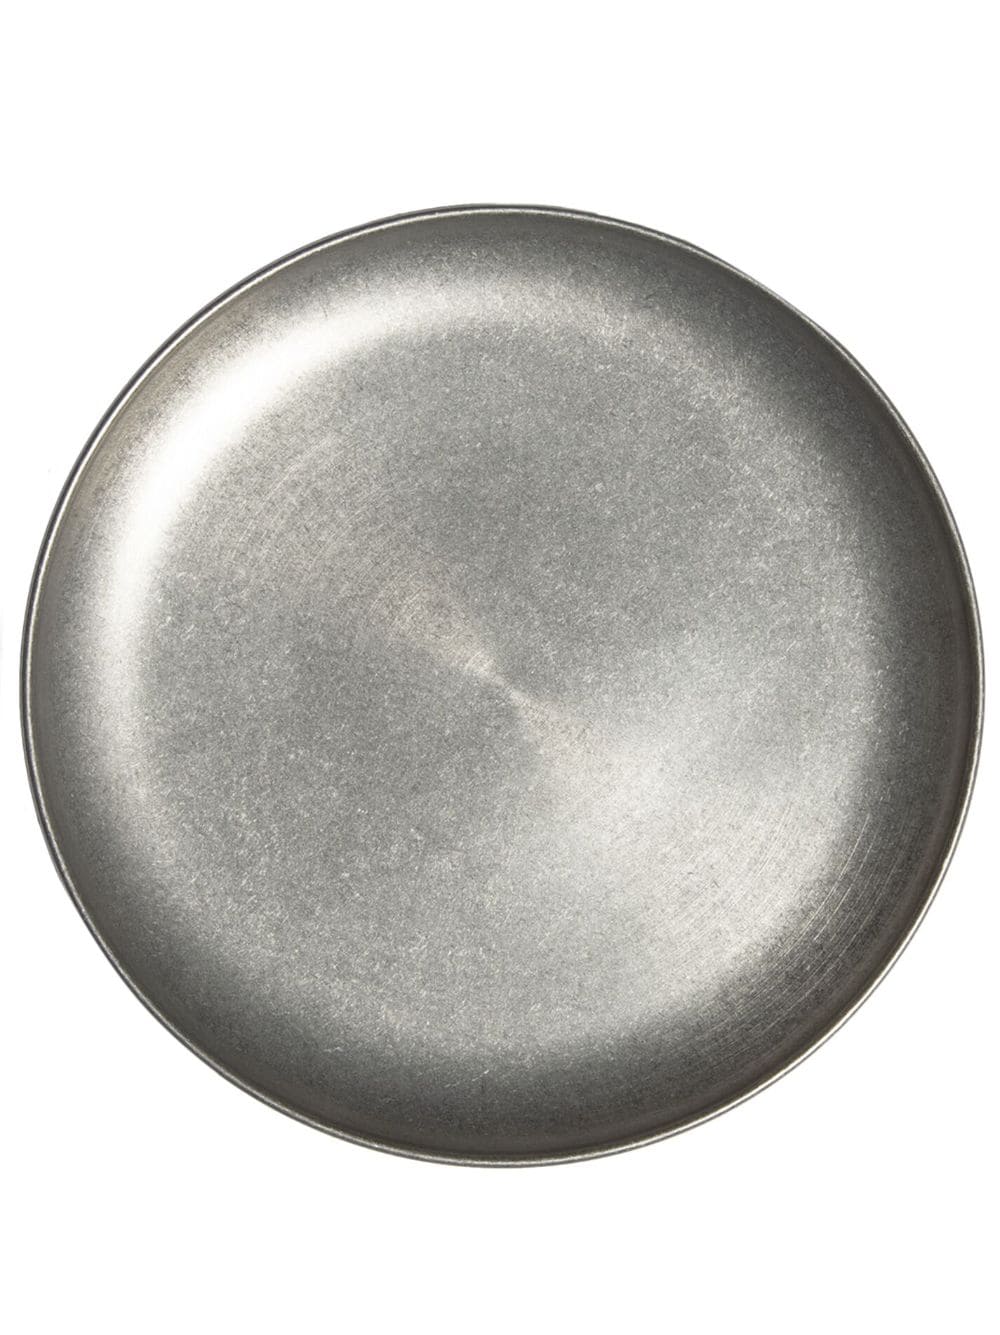 Bitossi Home Intreccio circular-design plate (30cm) - Silver von Bitossi Home